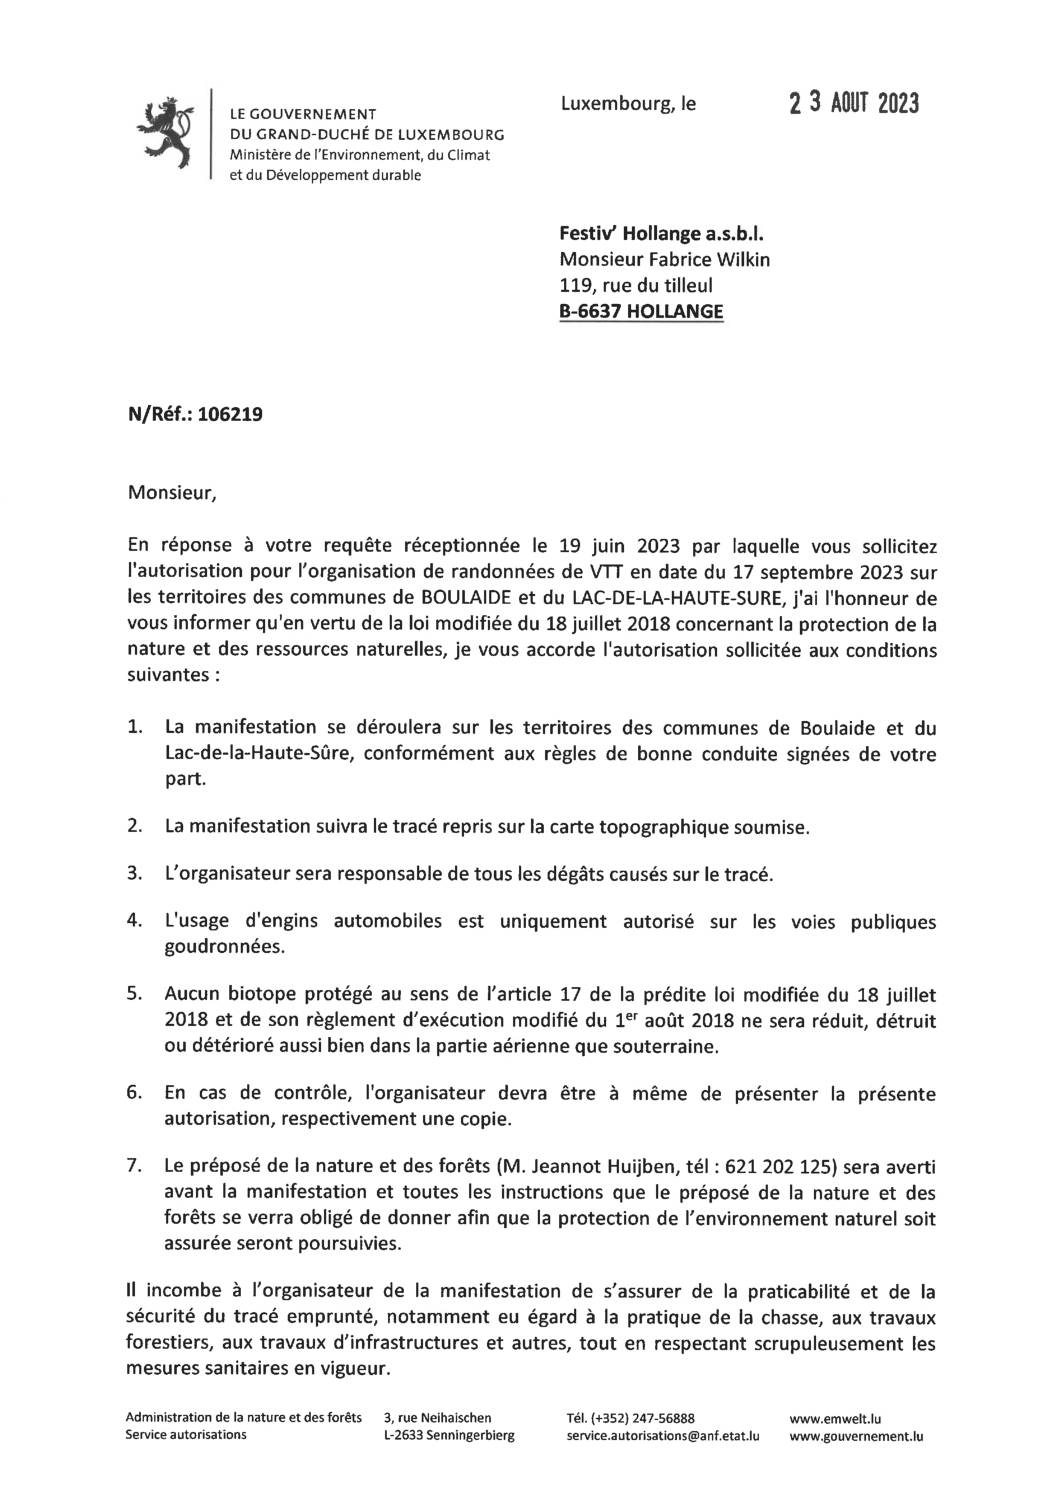 Autorisation pour l'organisation de randonnées de VTT en date du 17 septembre 2023 sur les territoires des communes de Boulaide et du Lac-de-la-haute-Sûre.